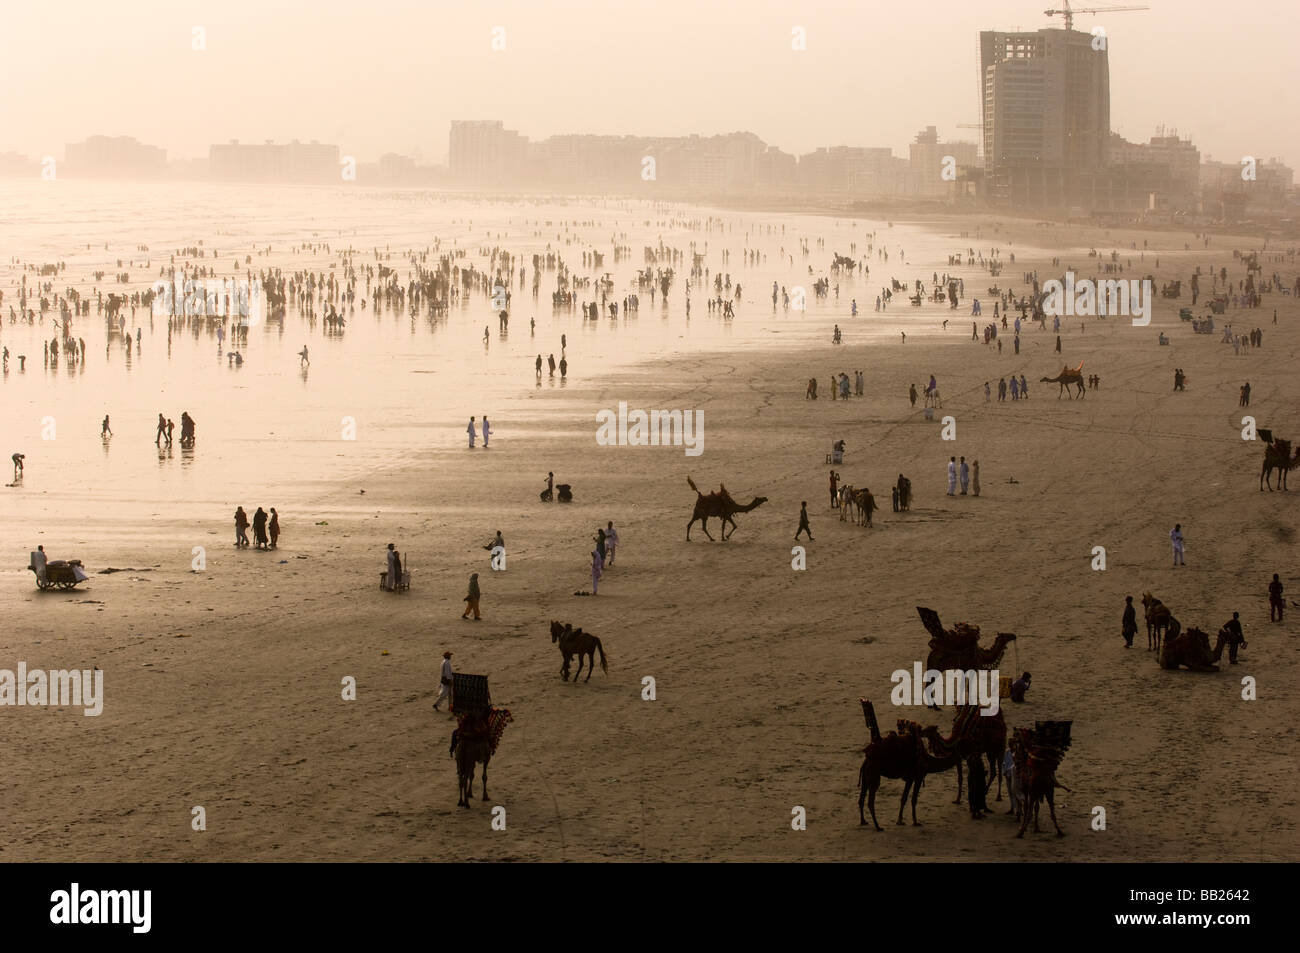 S appréciant les chameaux pakistanais et la mer sur la plage de Clifton Karachi Pakistan Banque D'Images